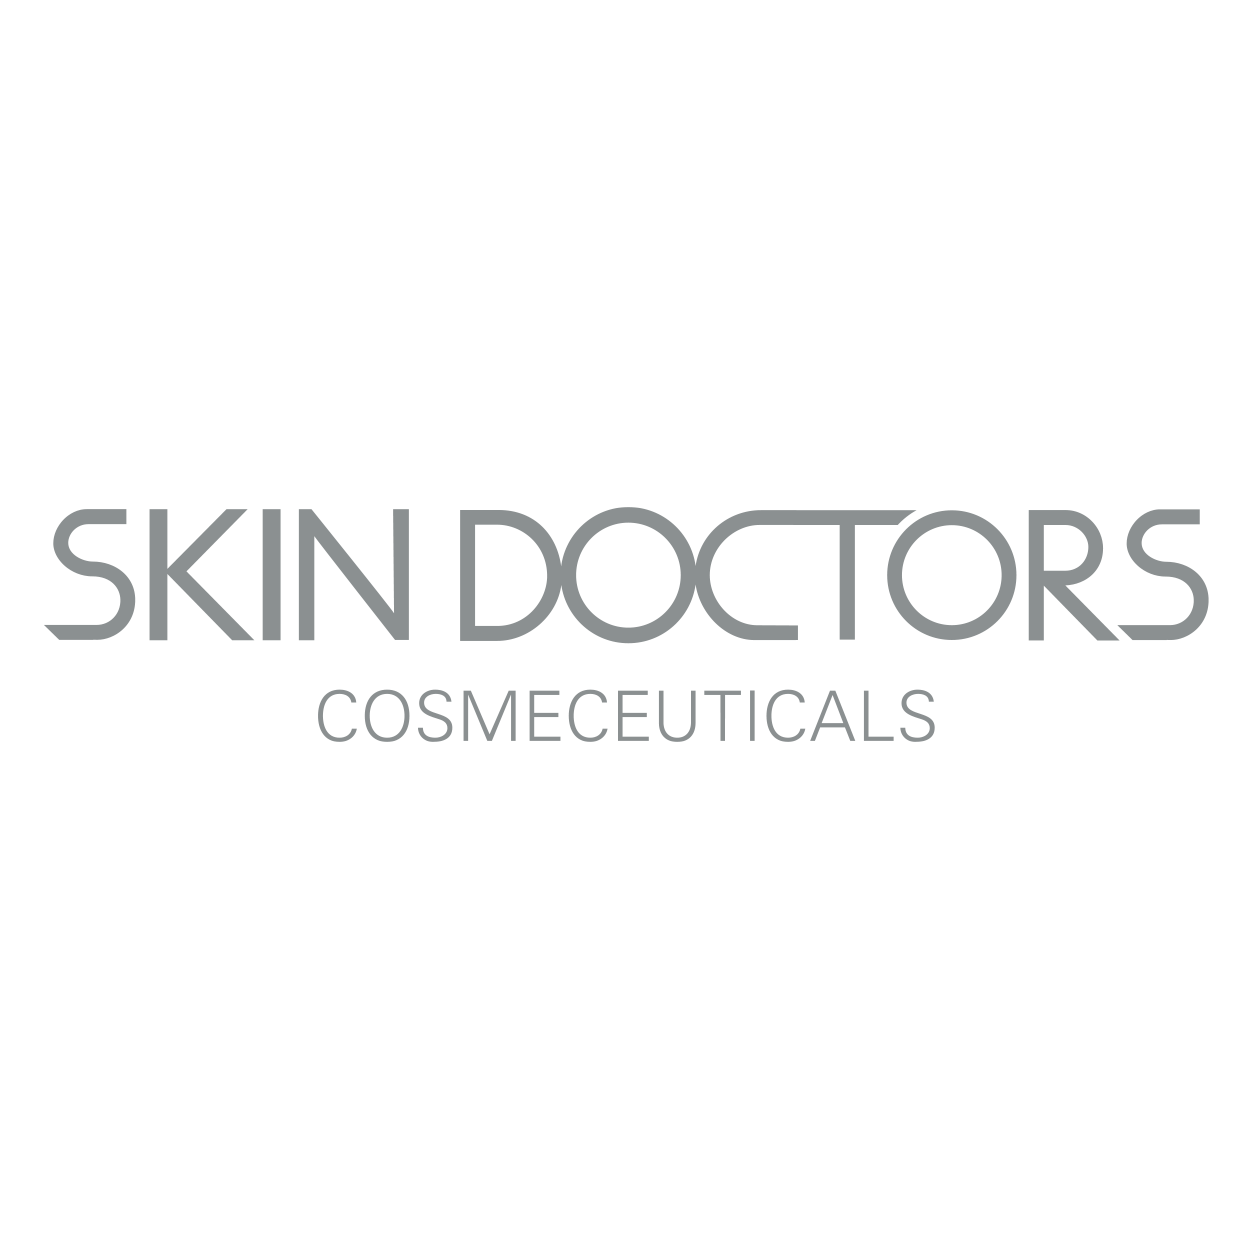 Skin Doctors